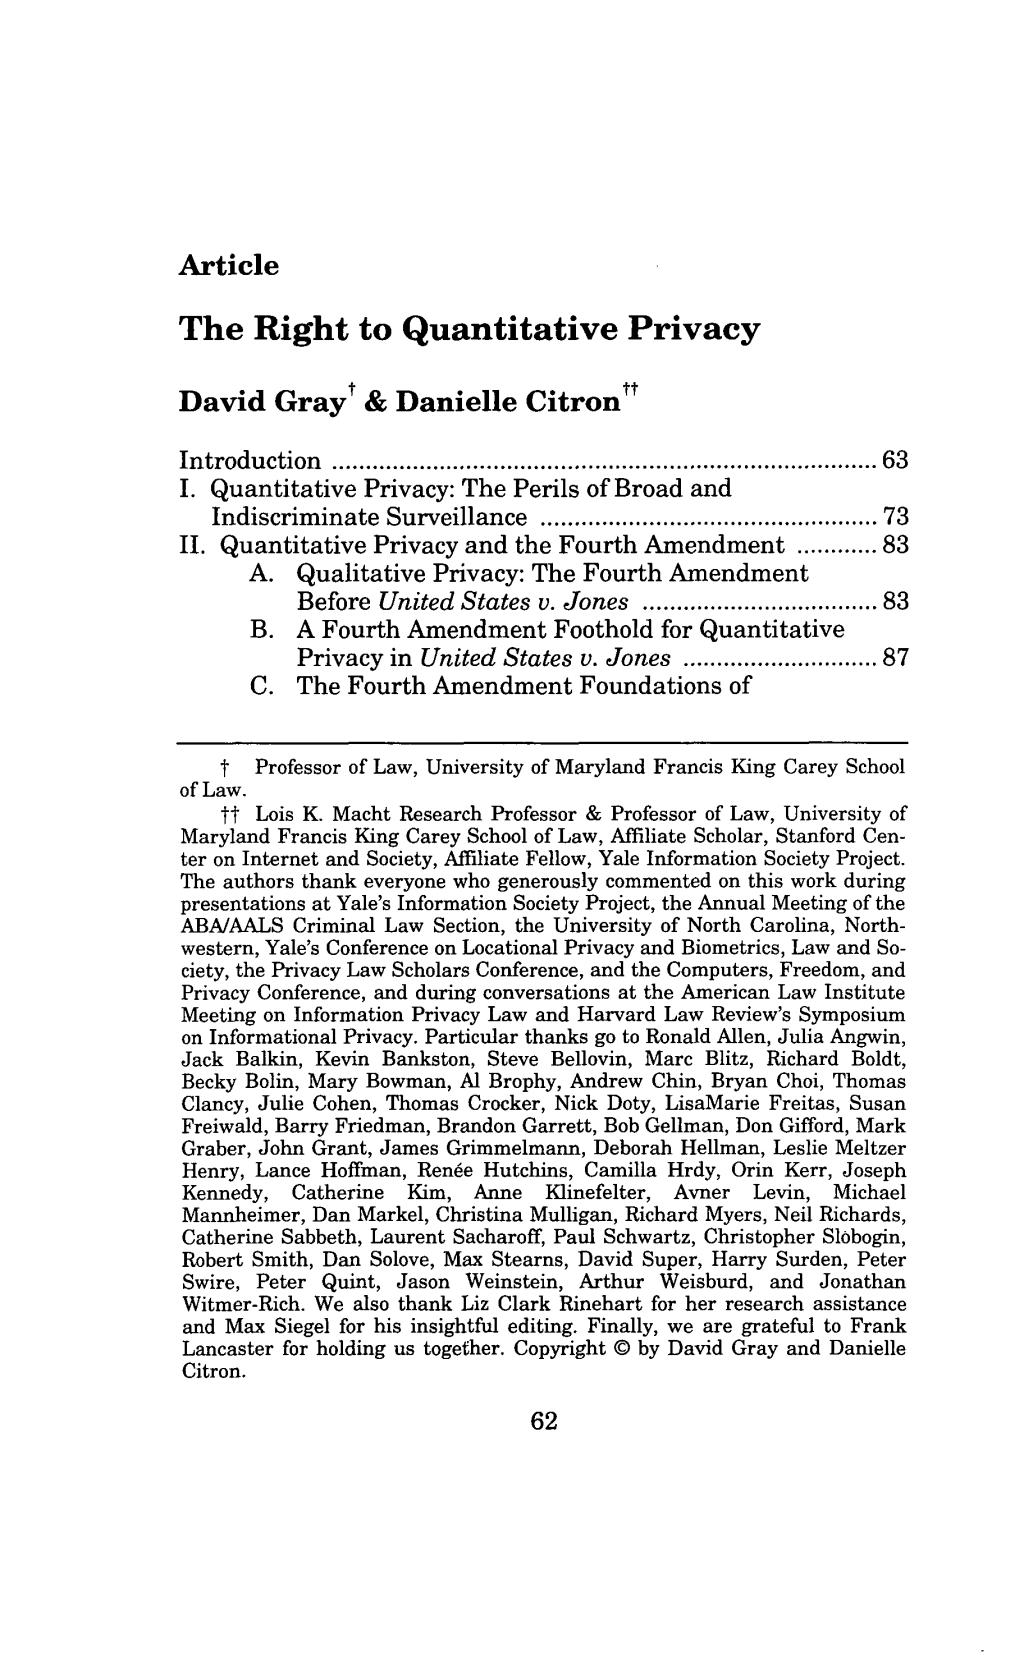 The Right to Quantitative Privacy